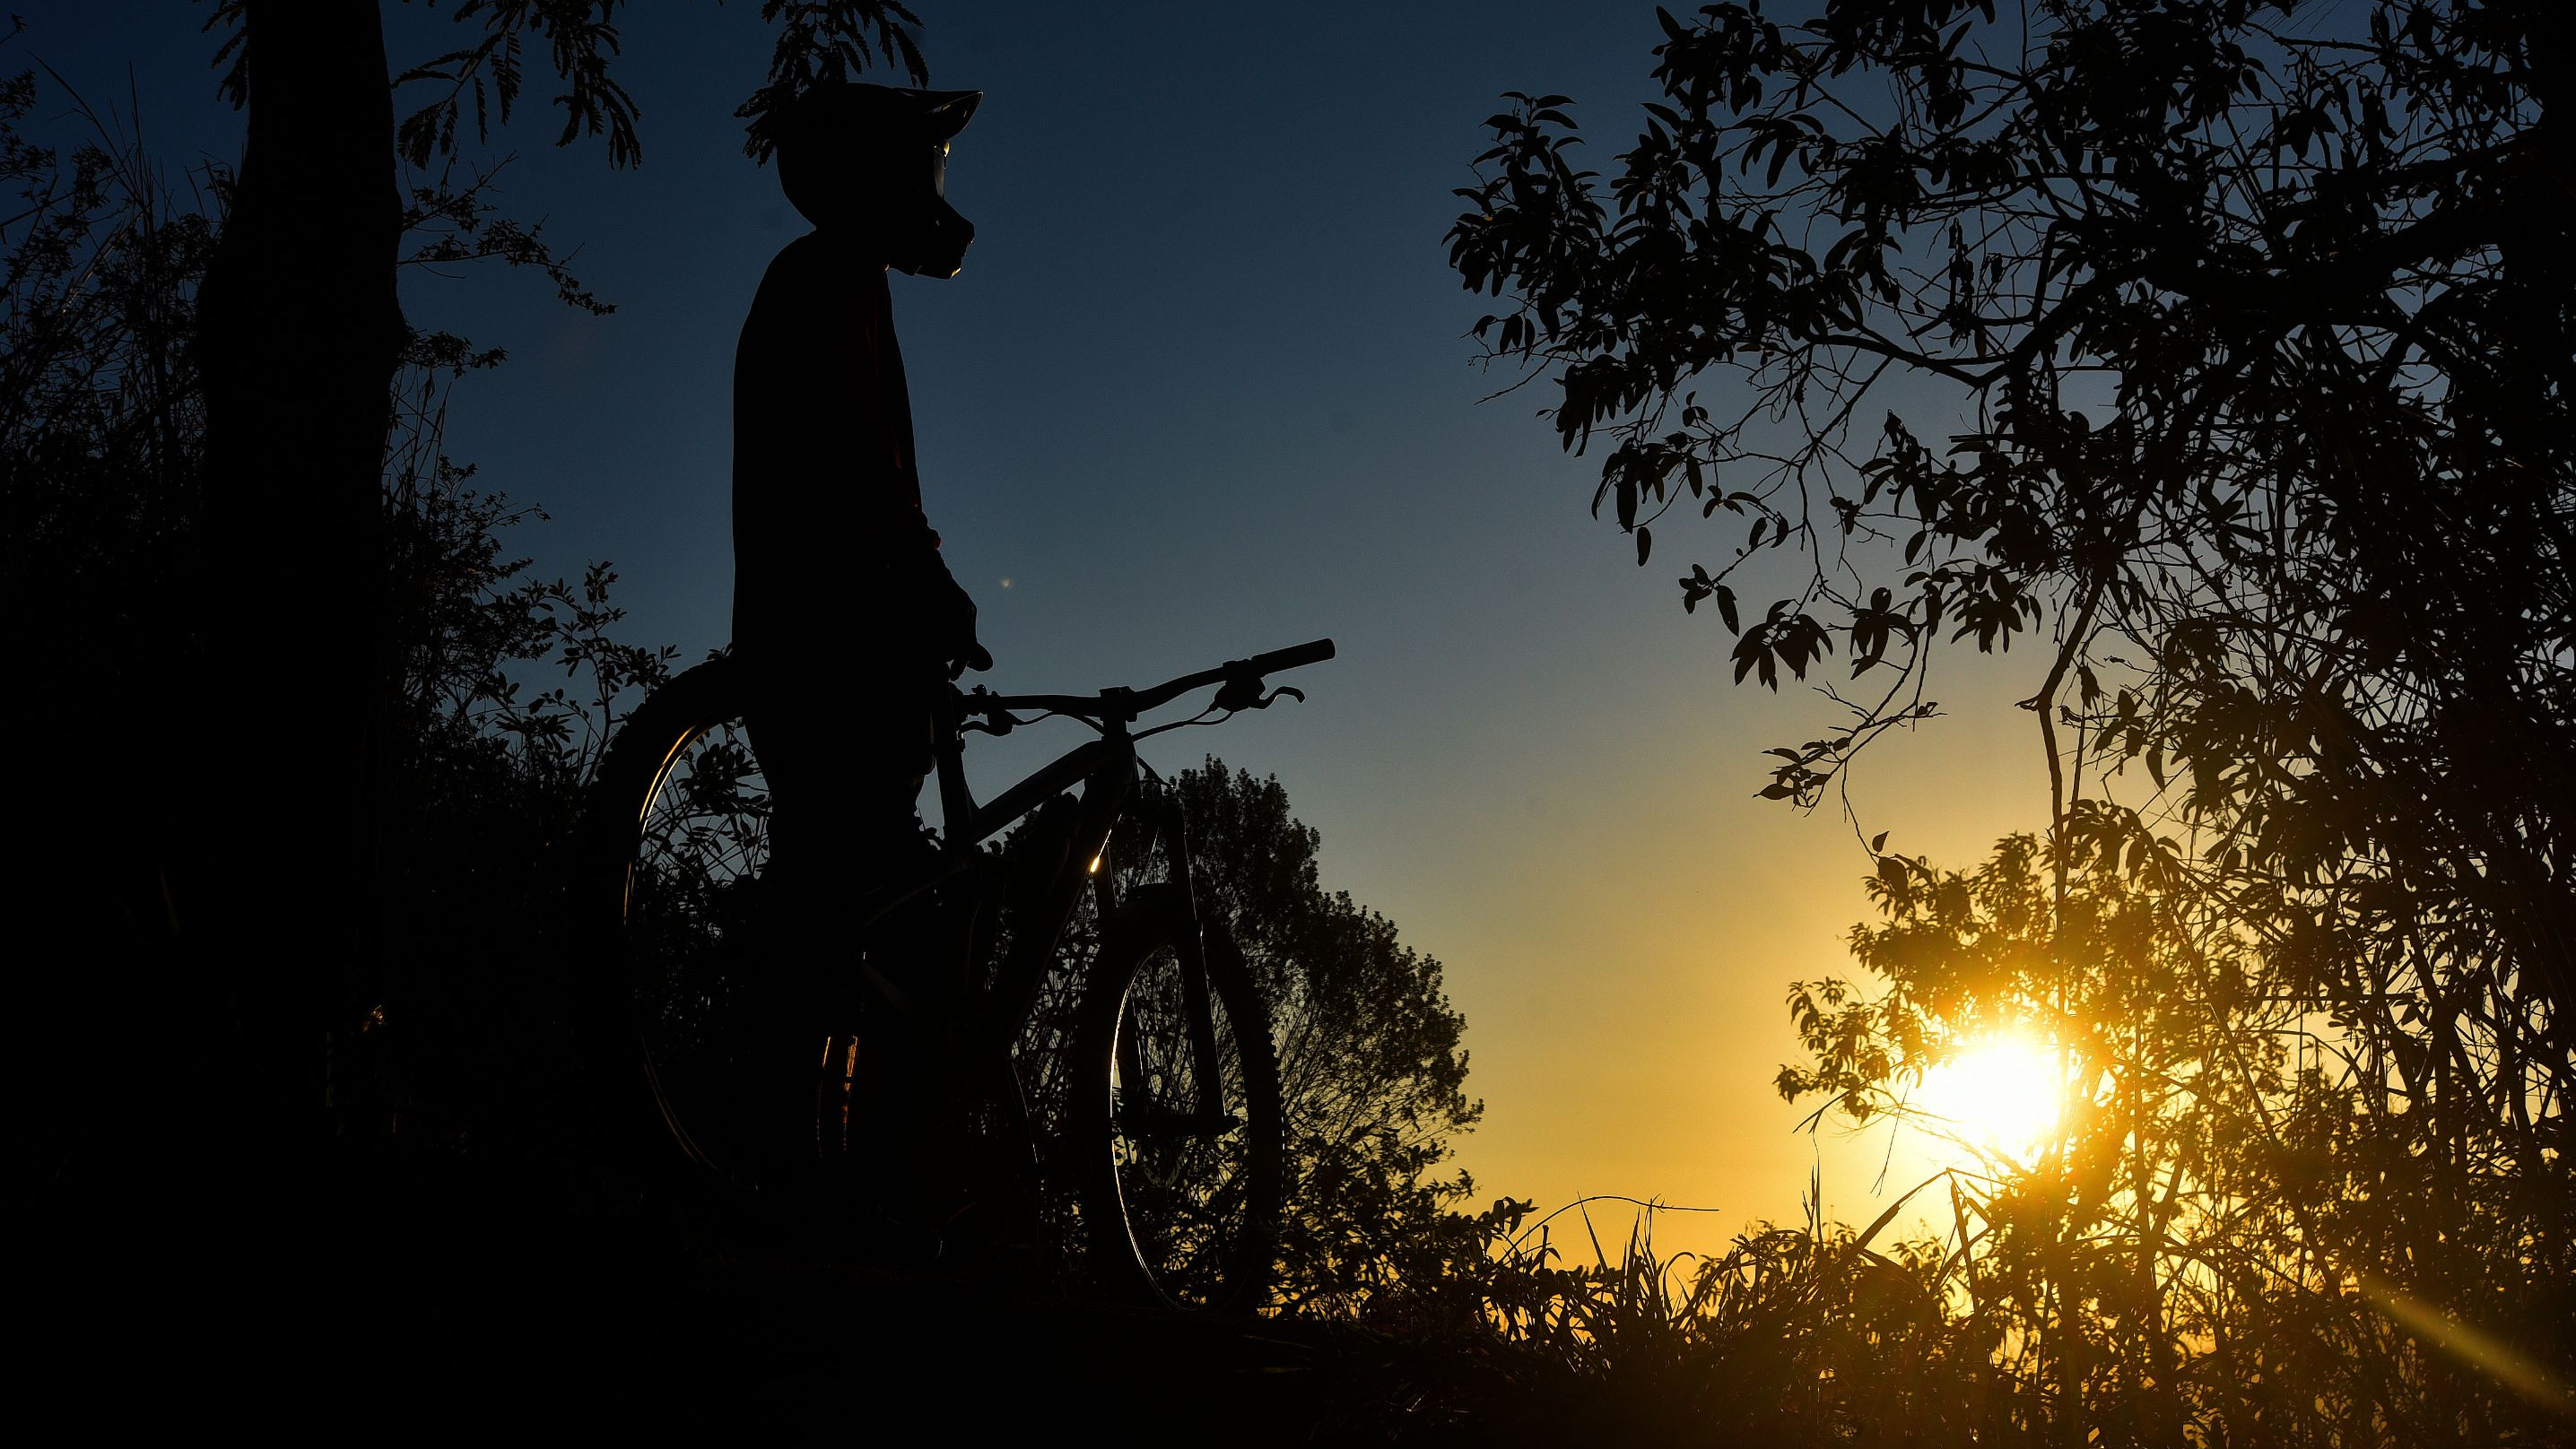 Ciclista contempla o pôr do sol na trilha do Morro do Moreno, em Vila Velha, ES